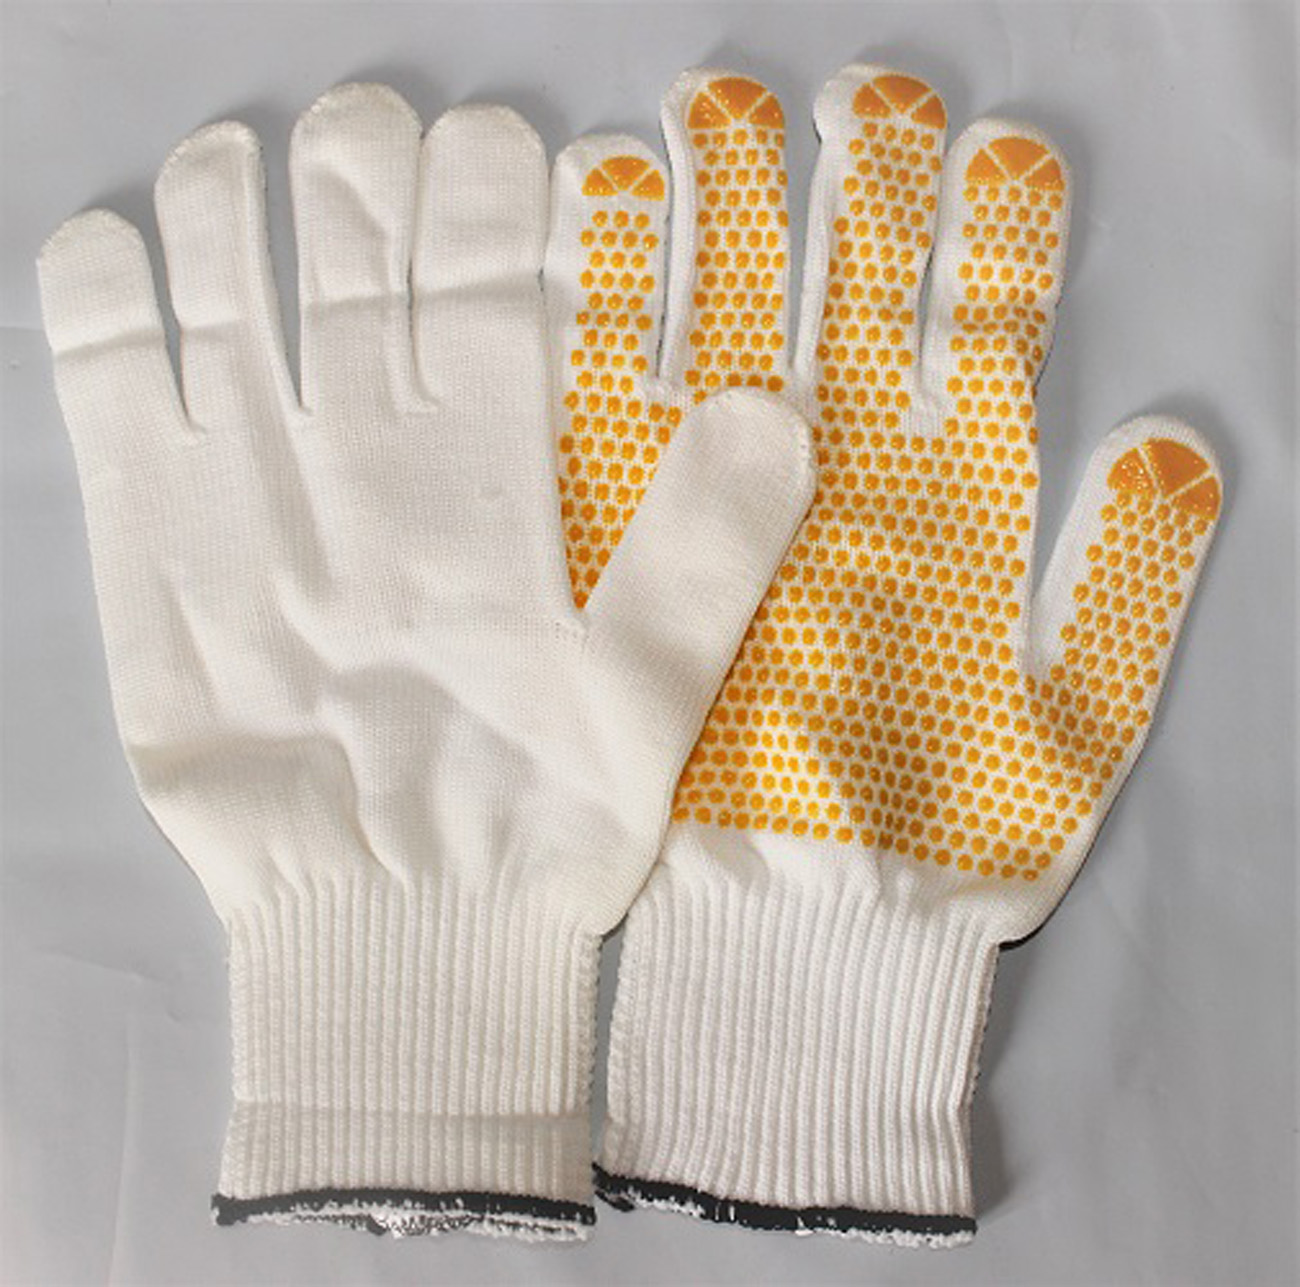 10 Paar KCL Schutz-Handschuhe Strickhandschuhe Polymex 916 Gr. 10 mit Noppen